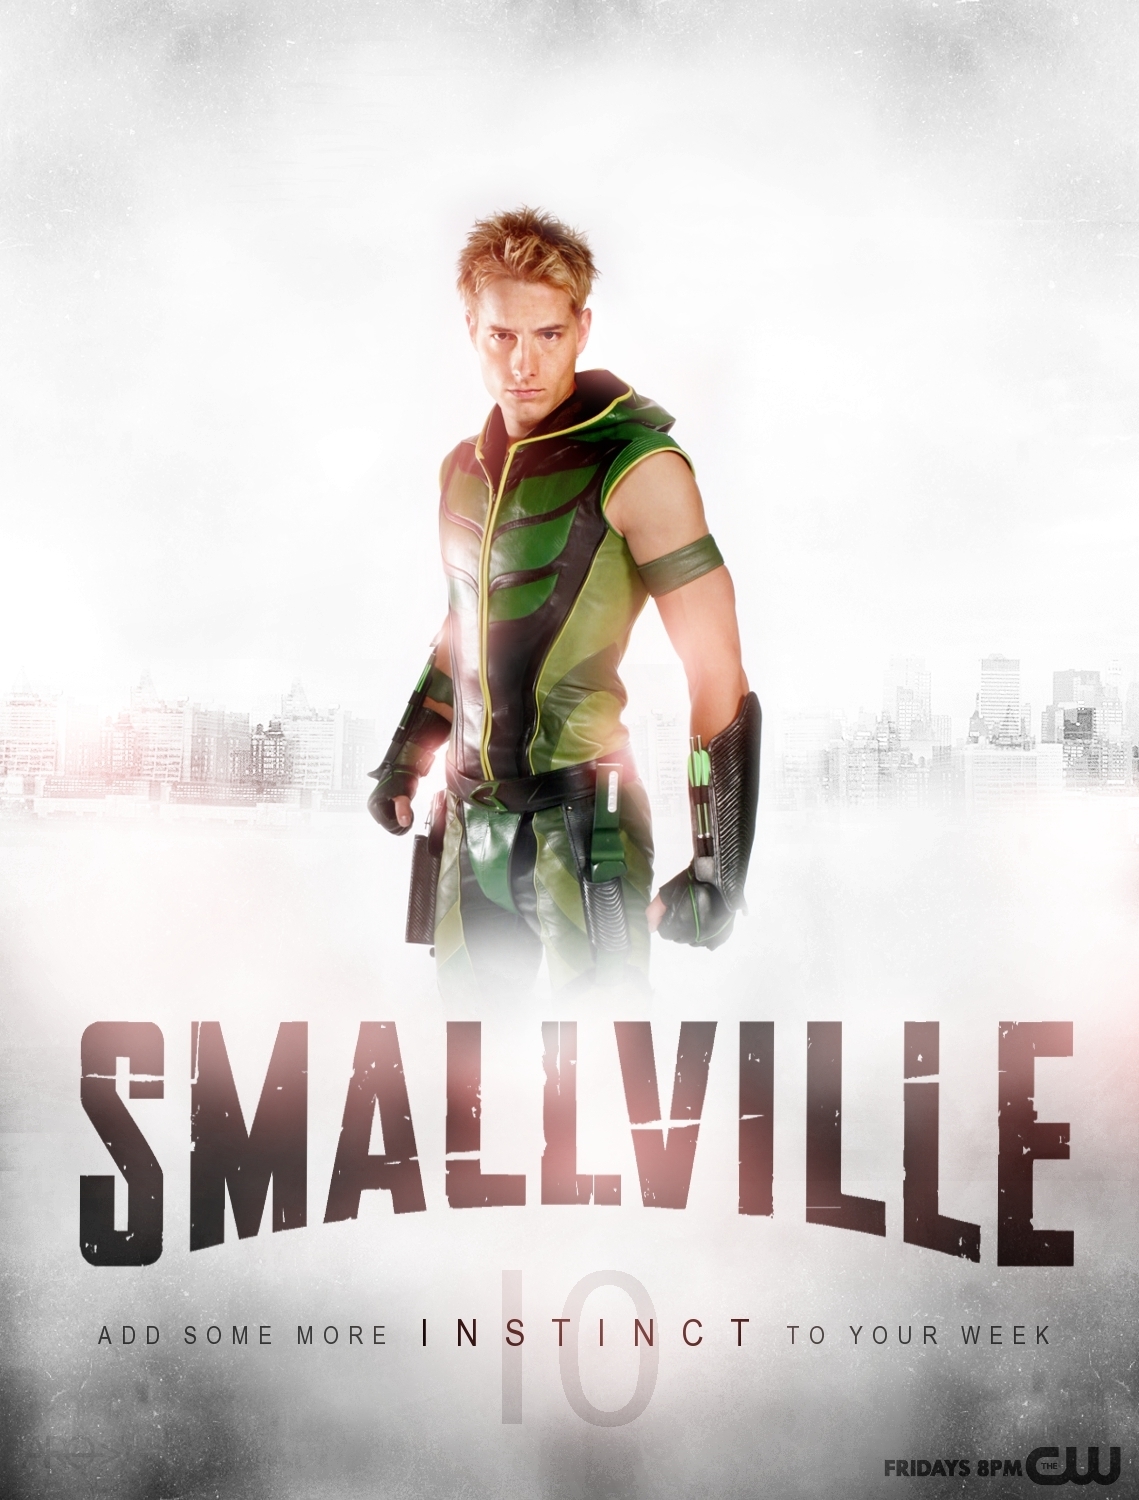 smallville wiki season 4